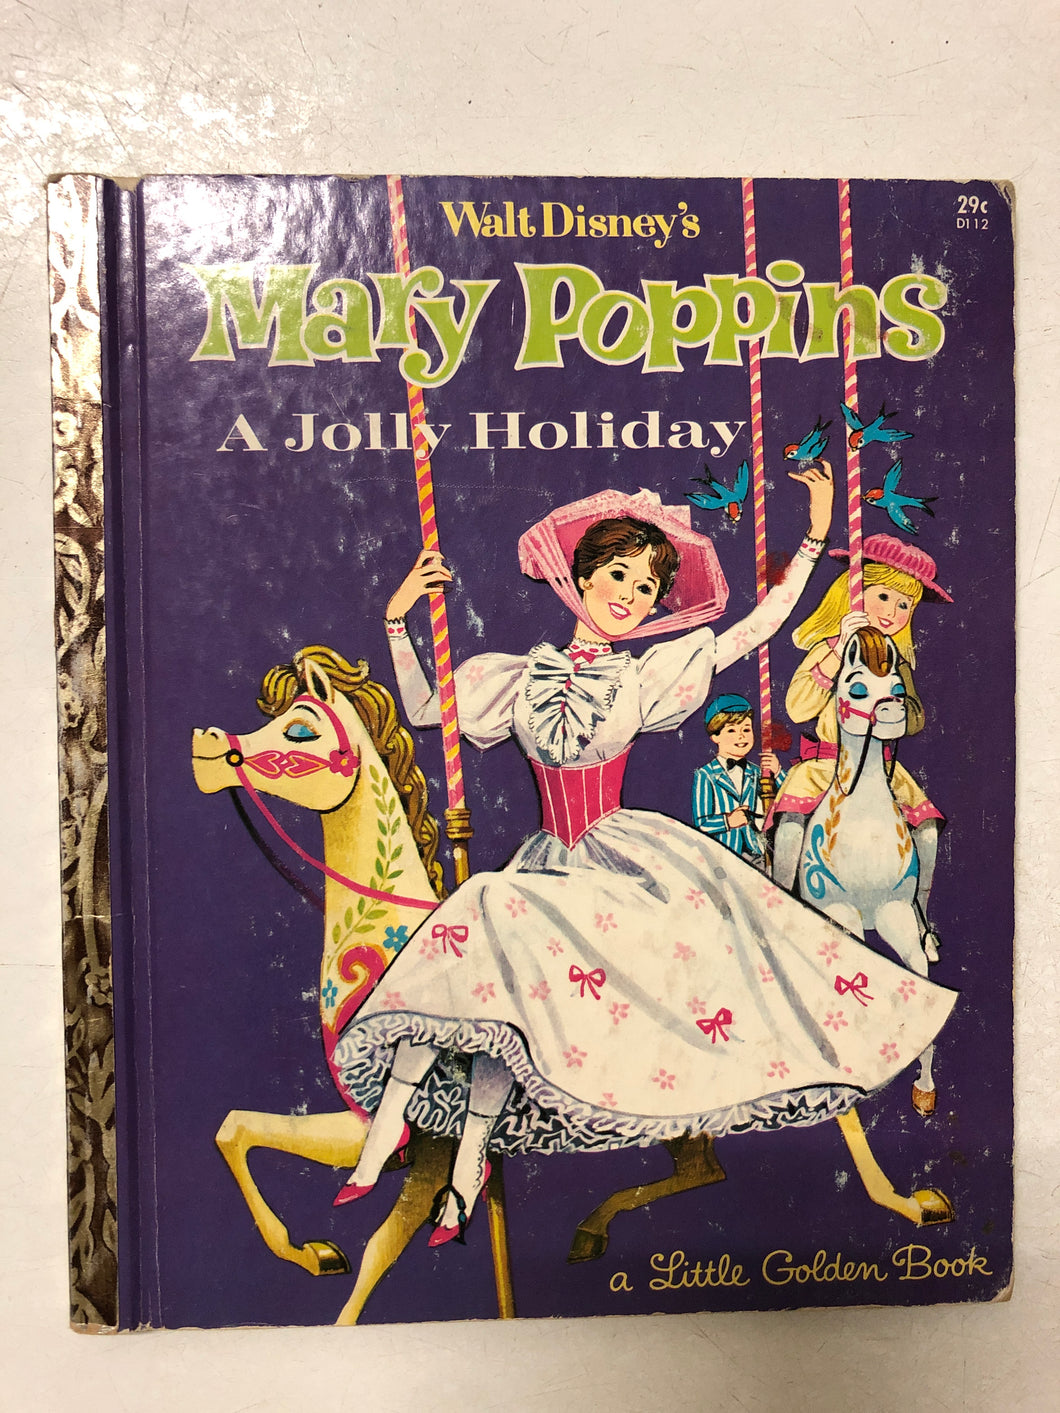 Walt Disney's Mary Poppins A Jolly Holiday – Slickcatbooks